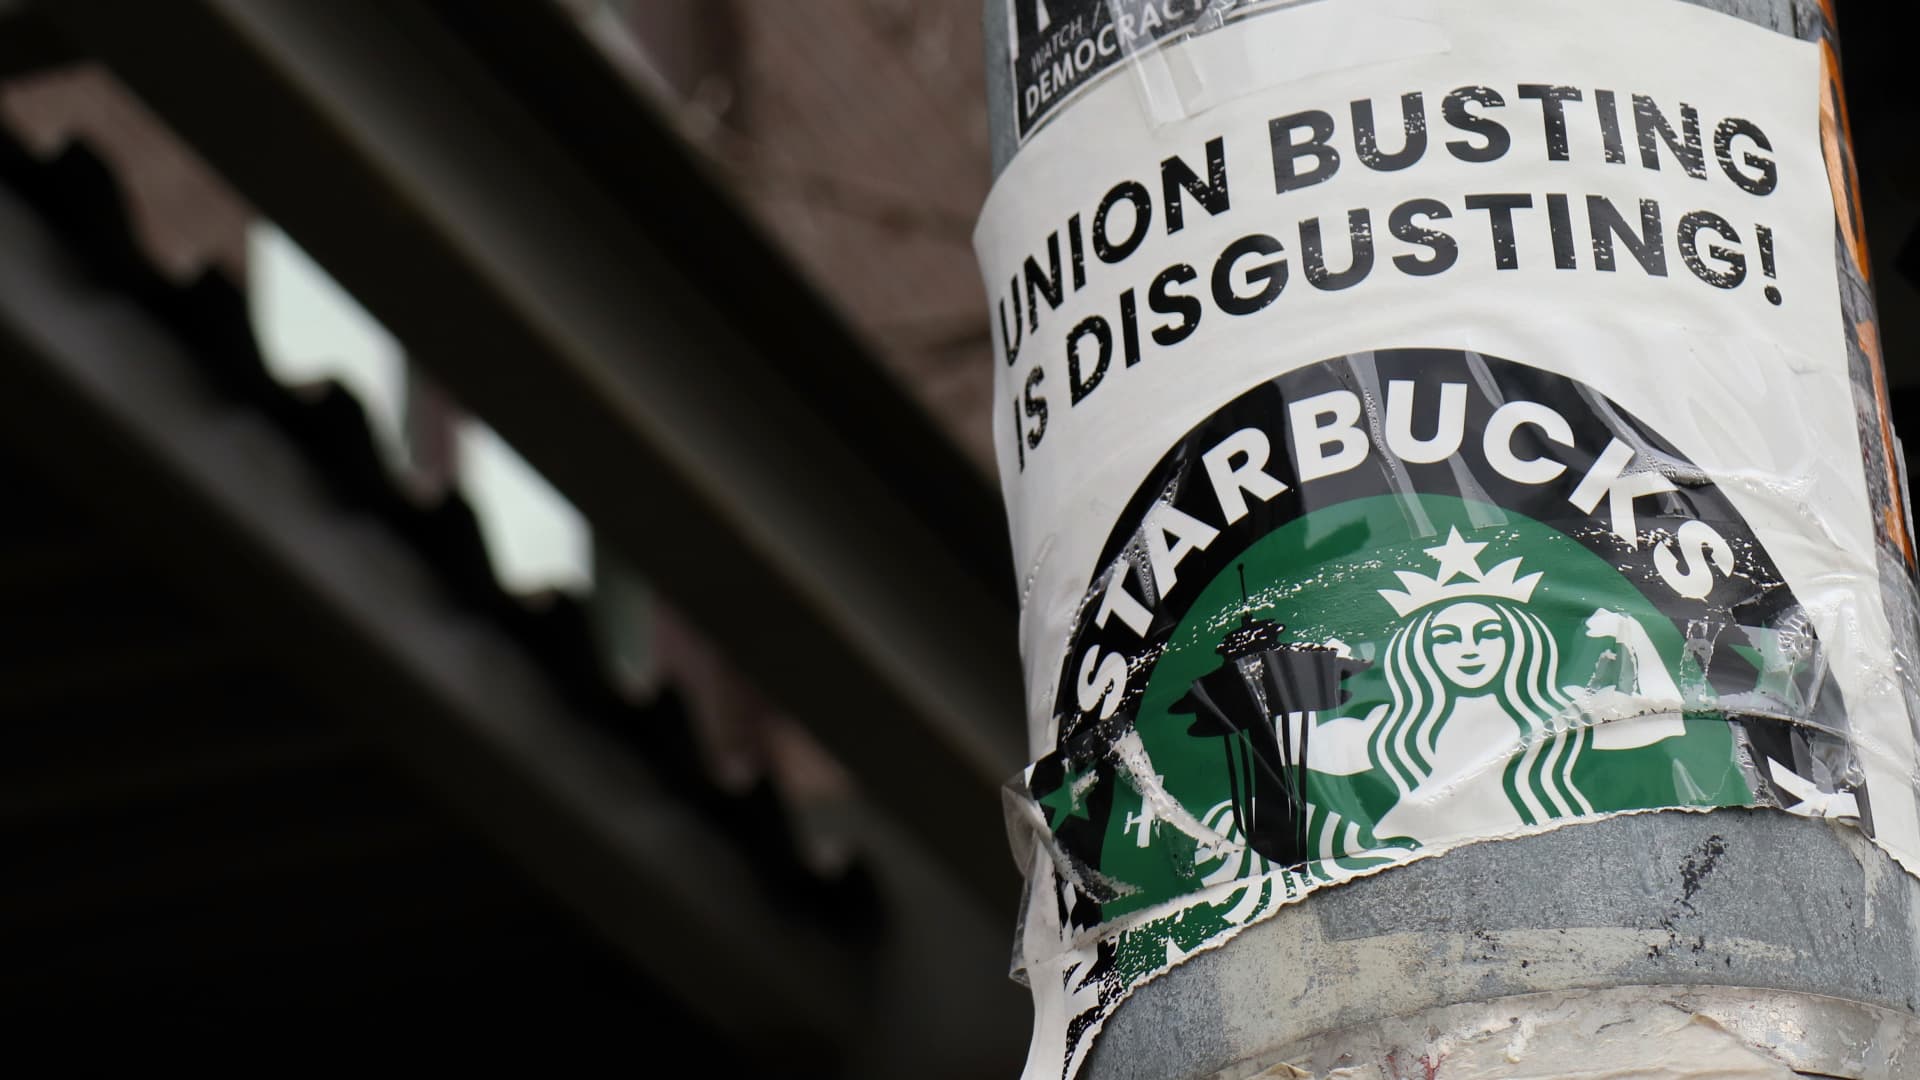 El sindicato alegó que Starbucks cerró ilegalmente la cafetería en respuesta, informa Bloomberg